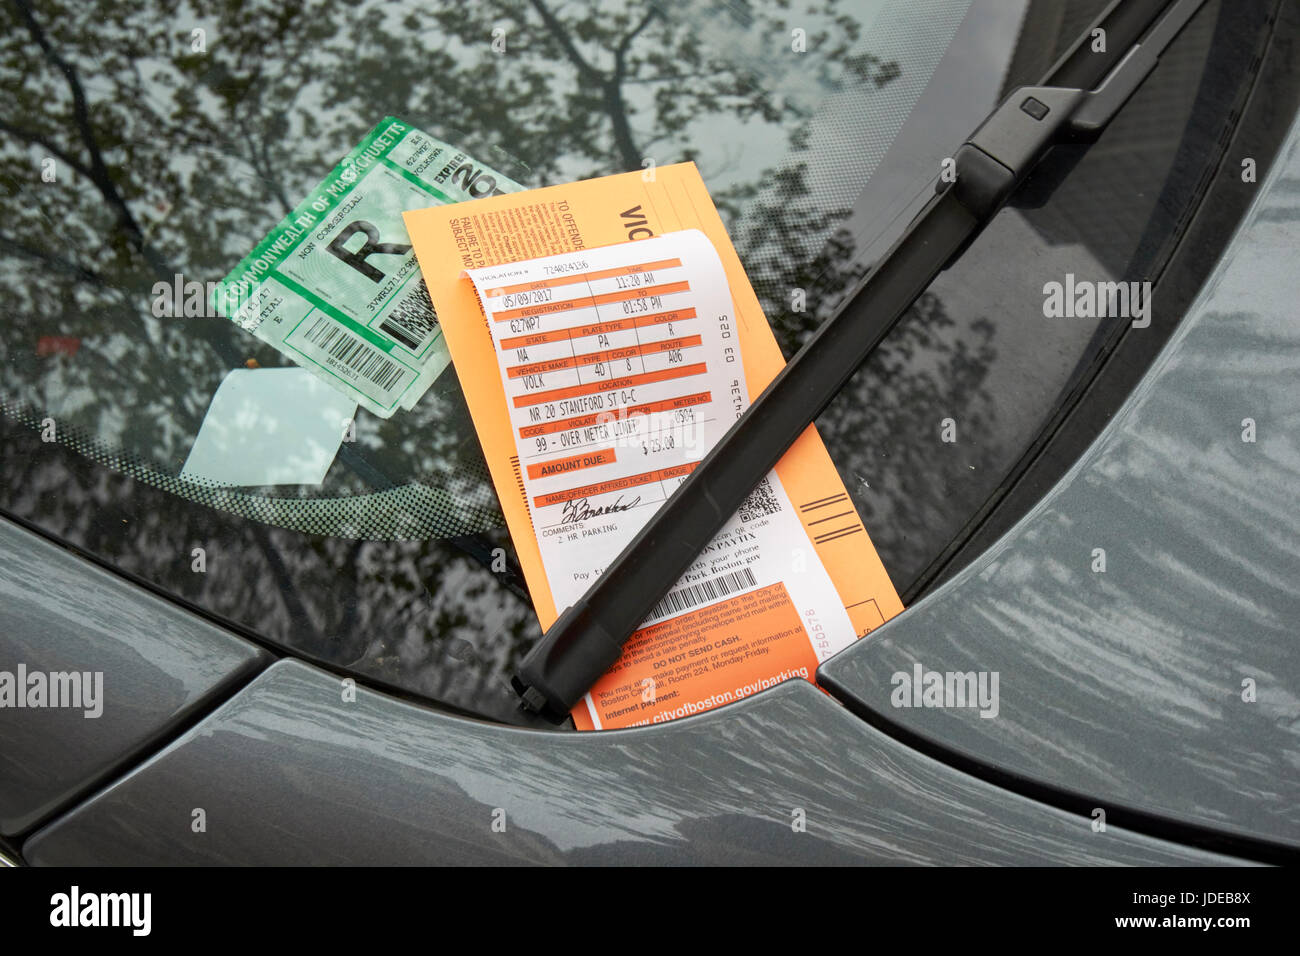 25 violation de limite plus parking dollar avis fine sur le pare-brise, Boston USA Banque D'Images